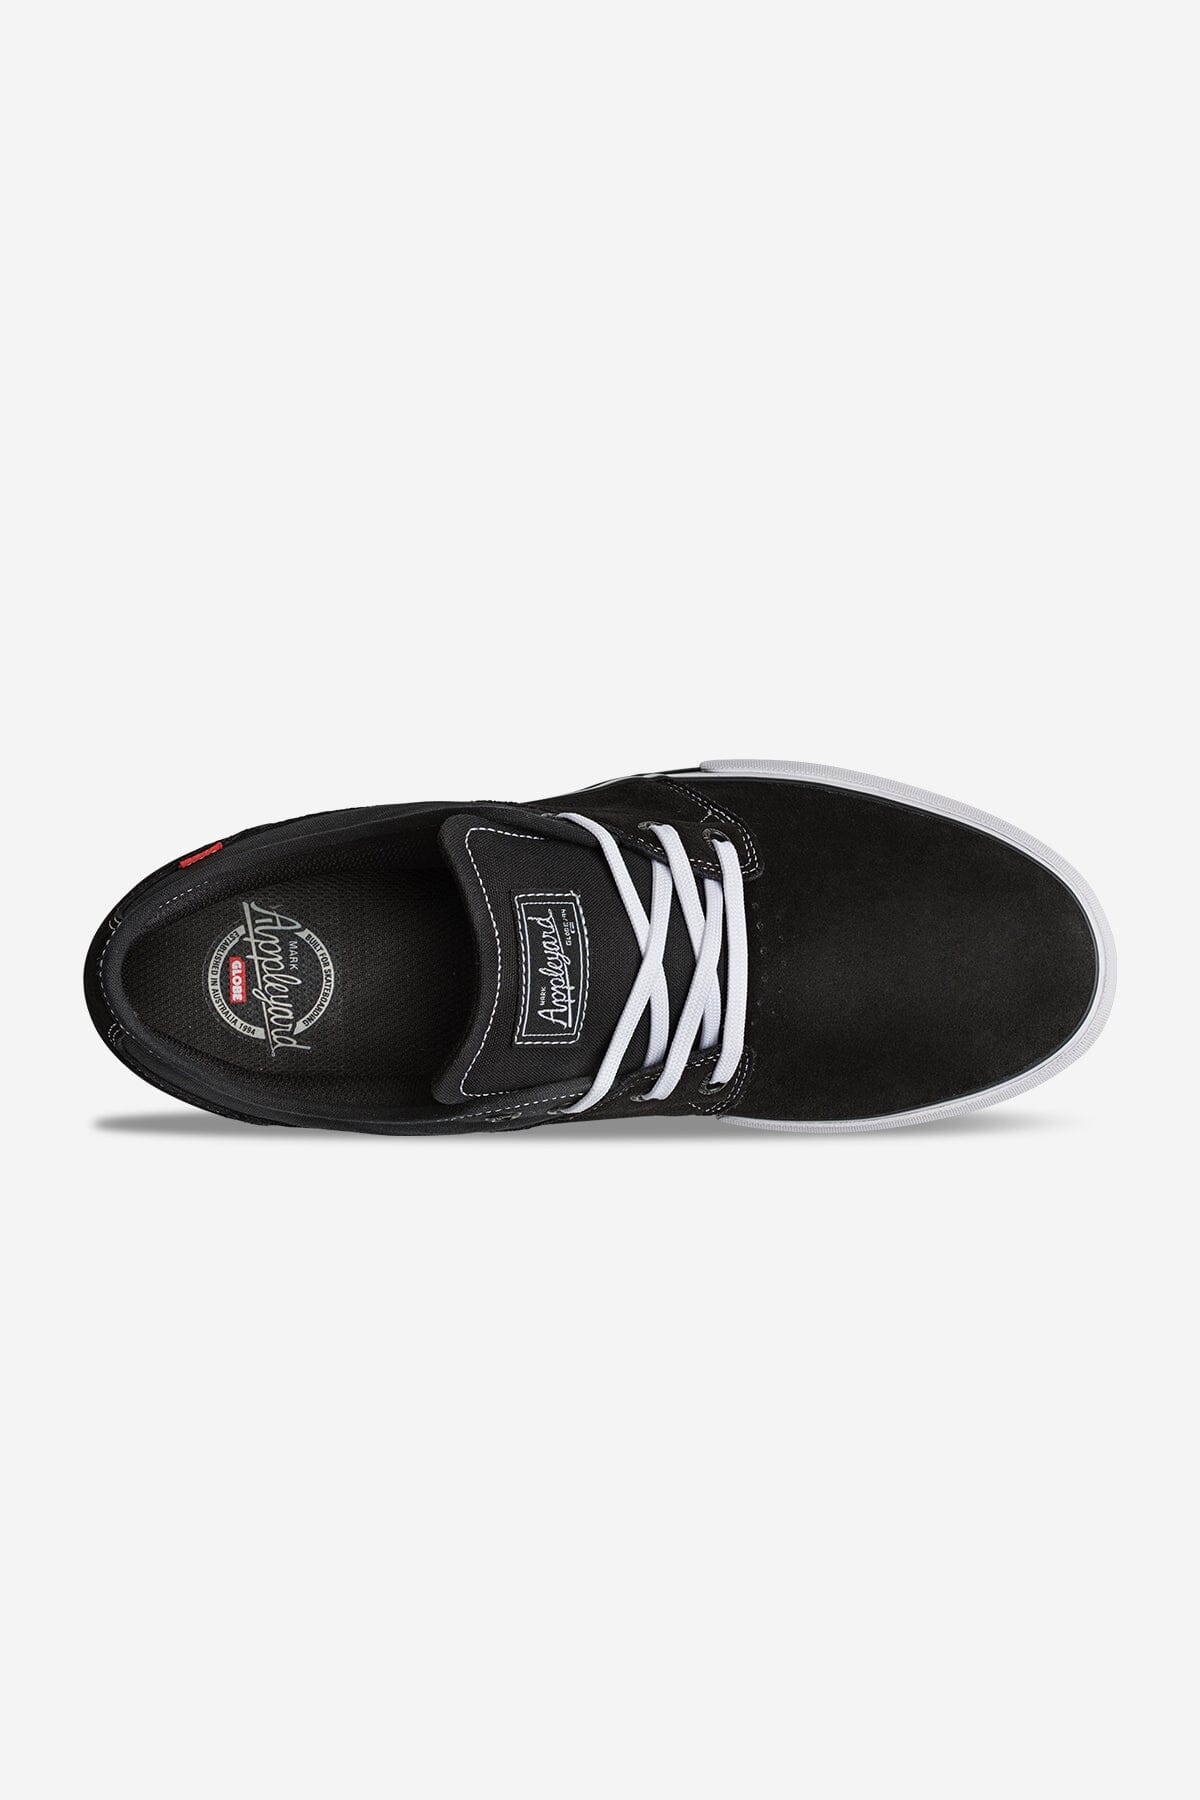 GLOBE Mahalo Shoes Black/Black/White Men's Skate Shoes Globe 